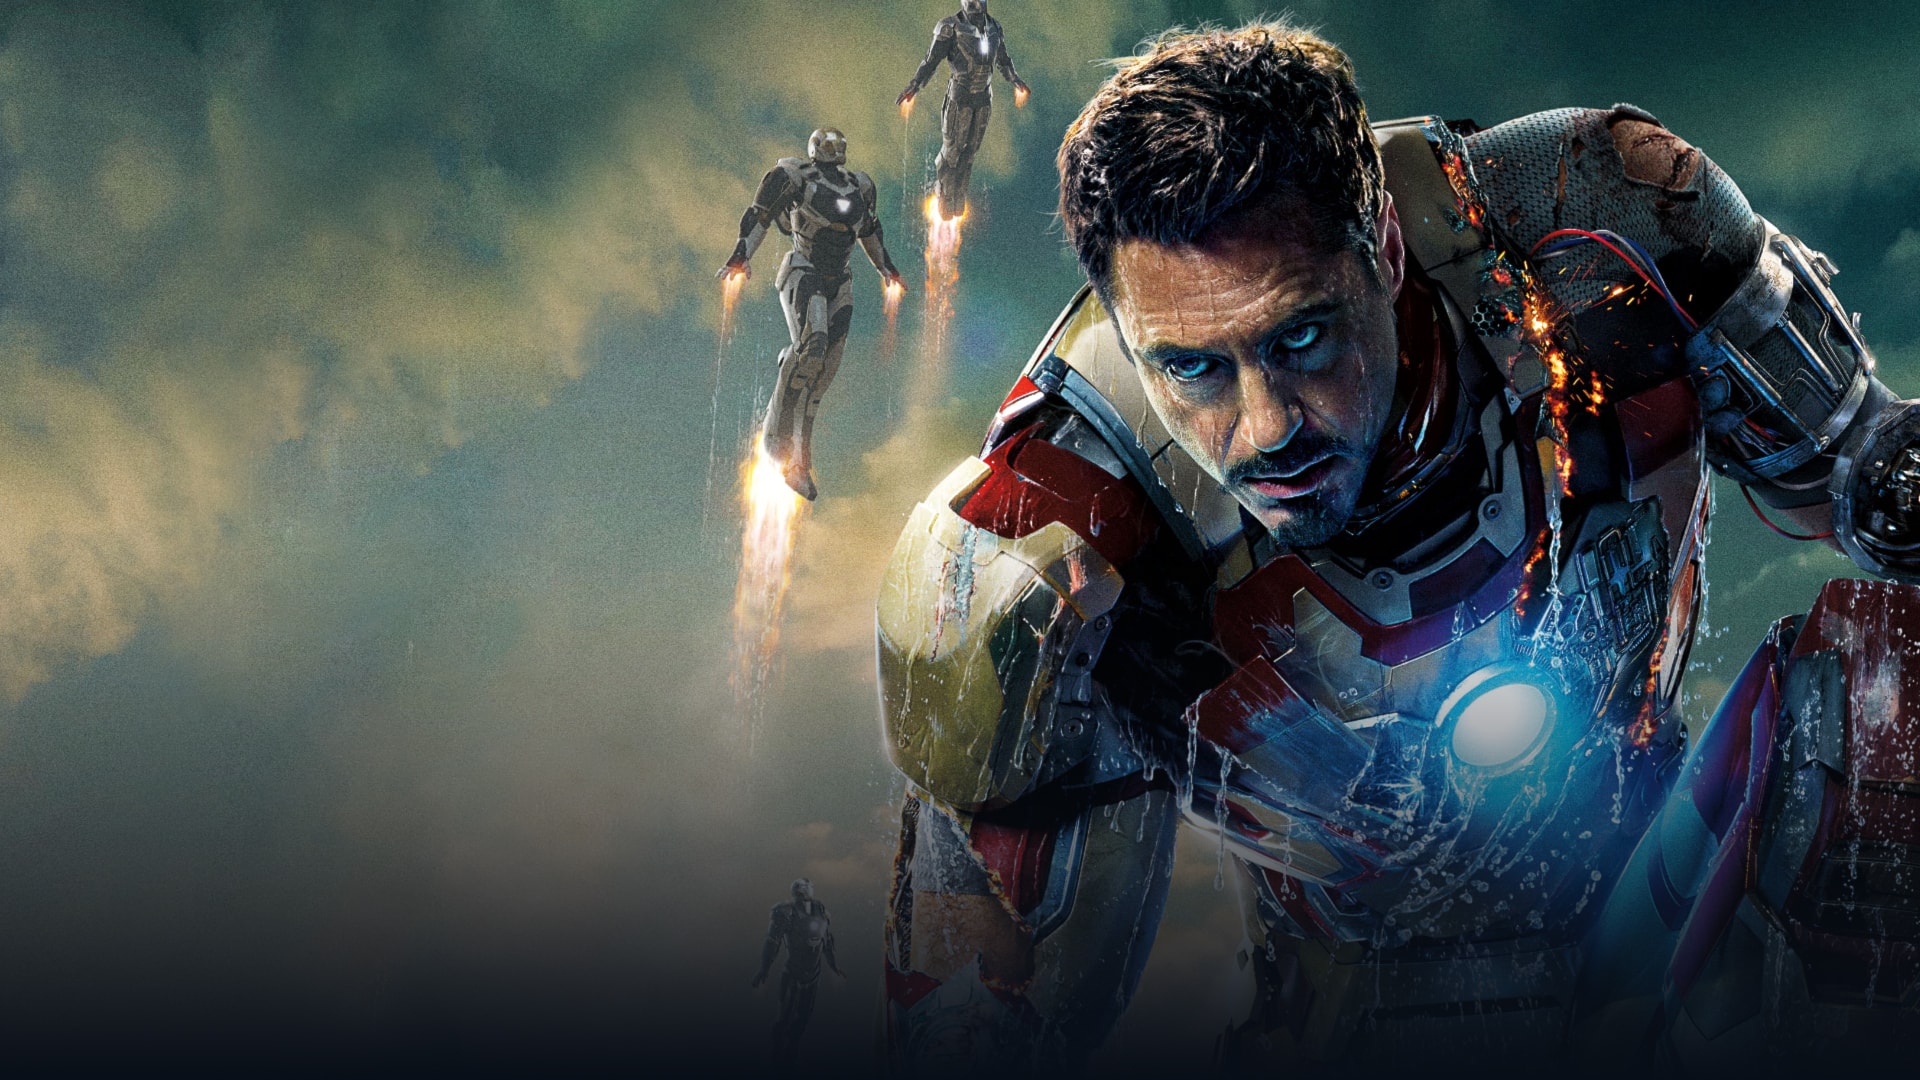 Iron Man là một trong những người hùng được yêu thích nhất trong vũ trụ Marvel. Với bộ giáp đầy ấn tượng, Iron Man là diện mạo mới hoàn hảo cho anh chàng tỷ phú tài ba Tony Stark. Nhấn vào ảnh để khám phá thêm về sức mạnh và sự hấp dẫn của Iron Man!